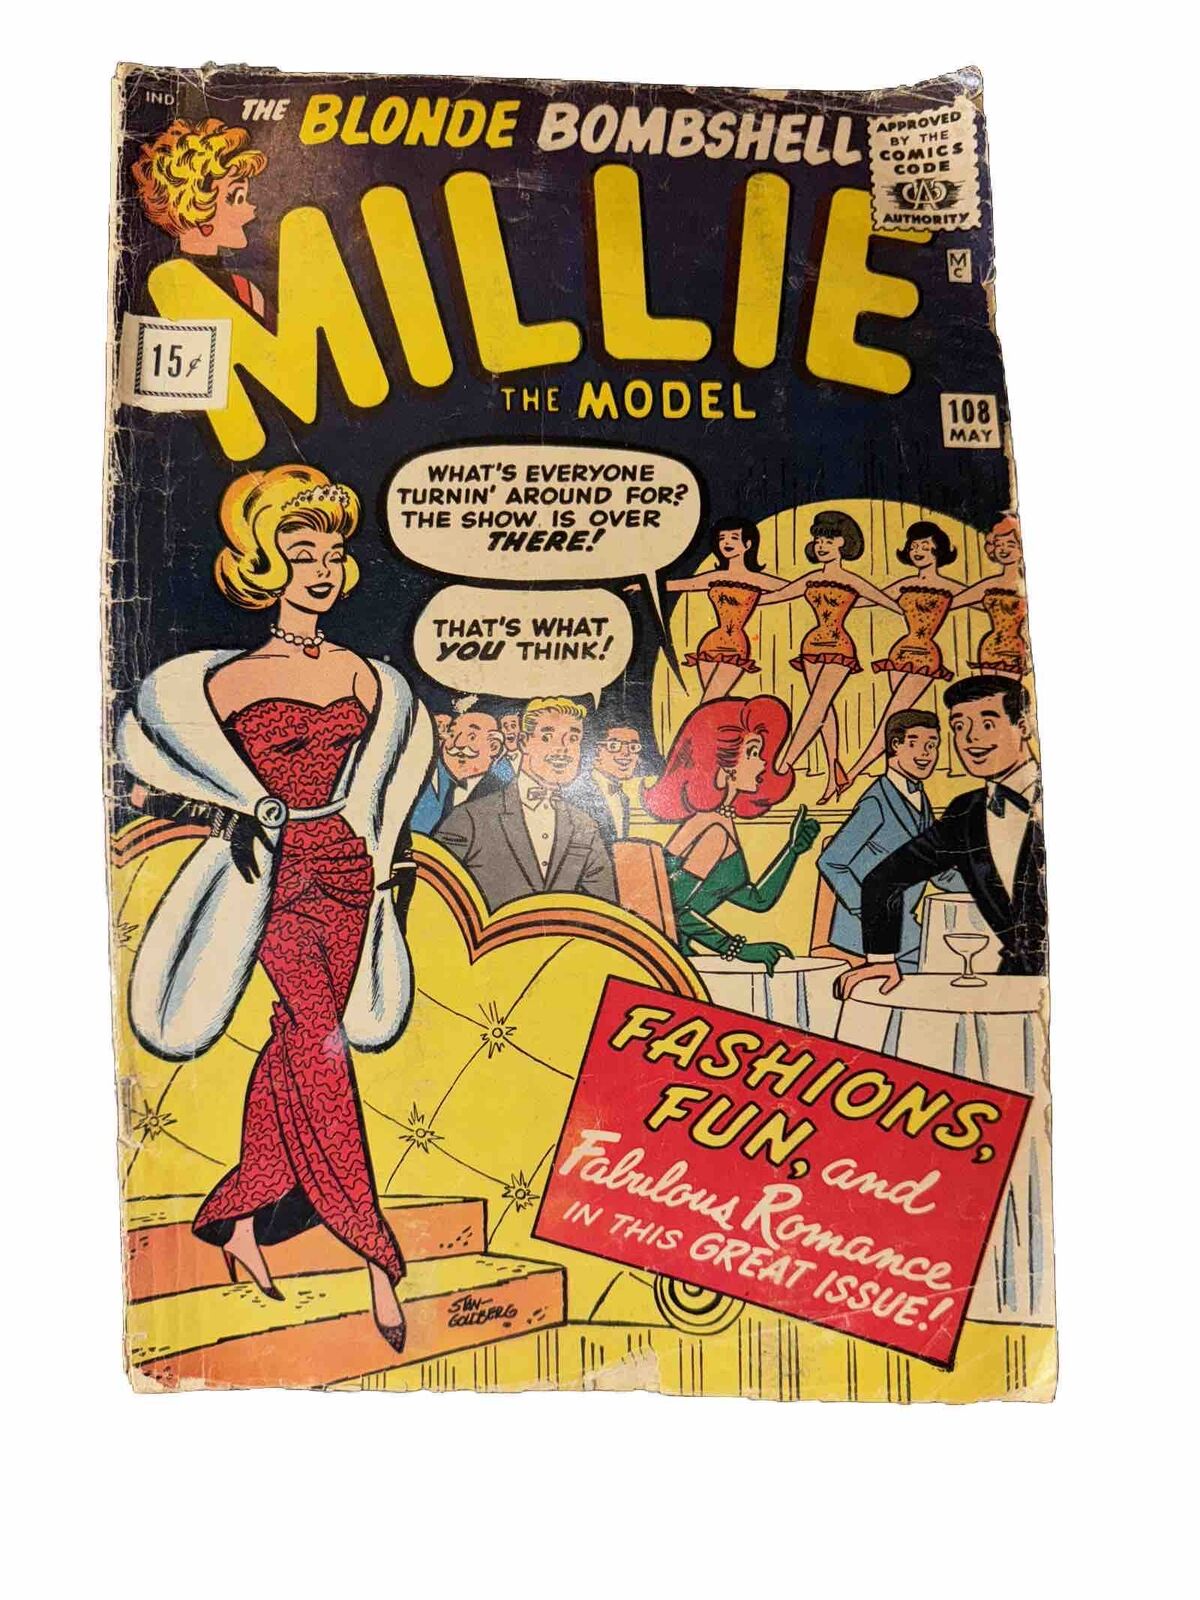 The Blonde Bombshell Millie 1962 The Model #108